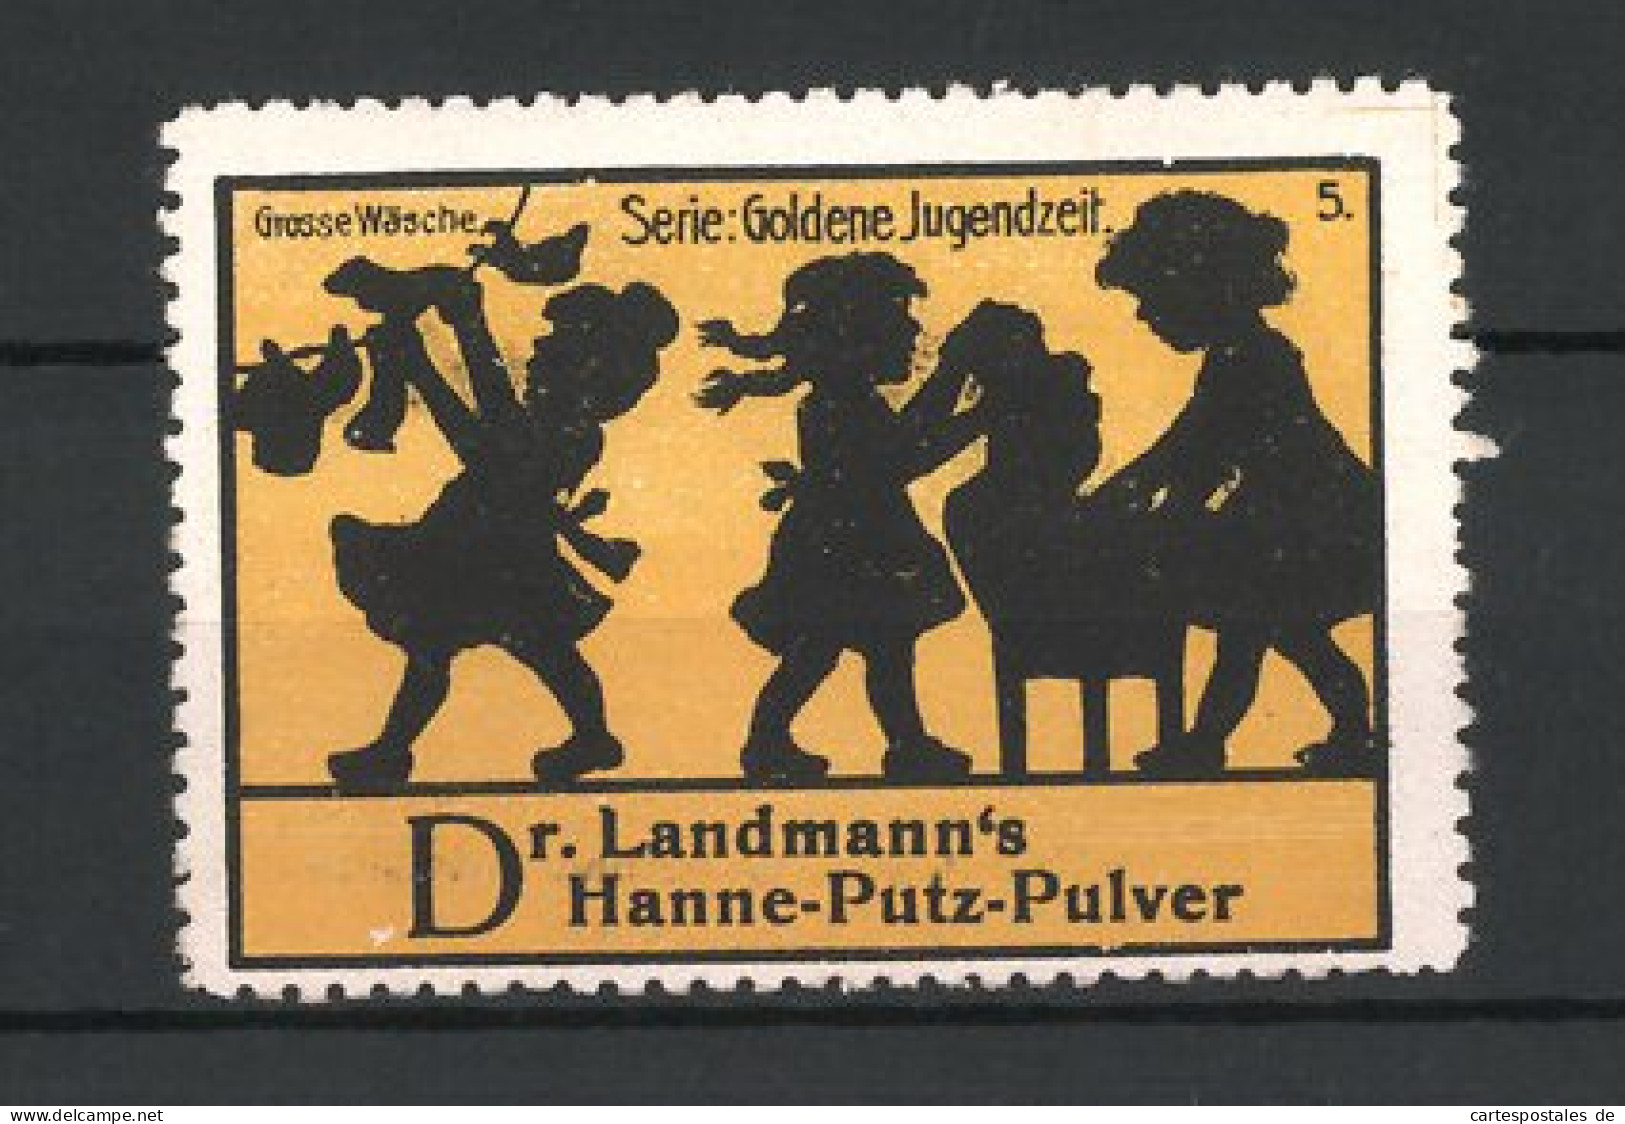 Reklamemarke Dr. Lahmann's Hanne-Putz-Pulver, Serie: Goldene Jugendzeit, Grosse Wäsche  - Erinnophilie